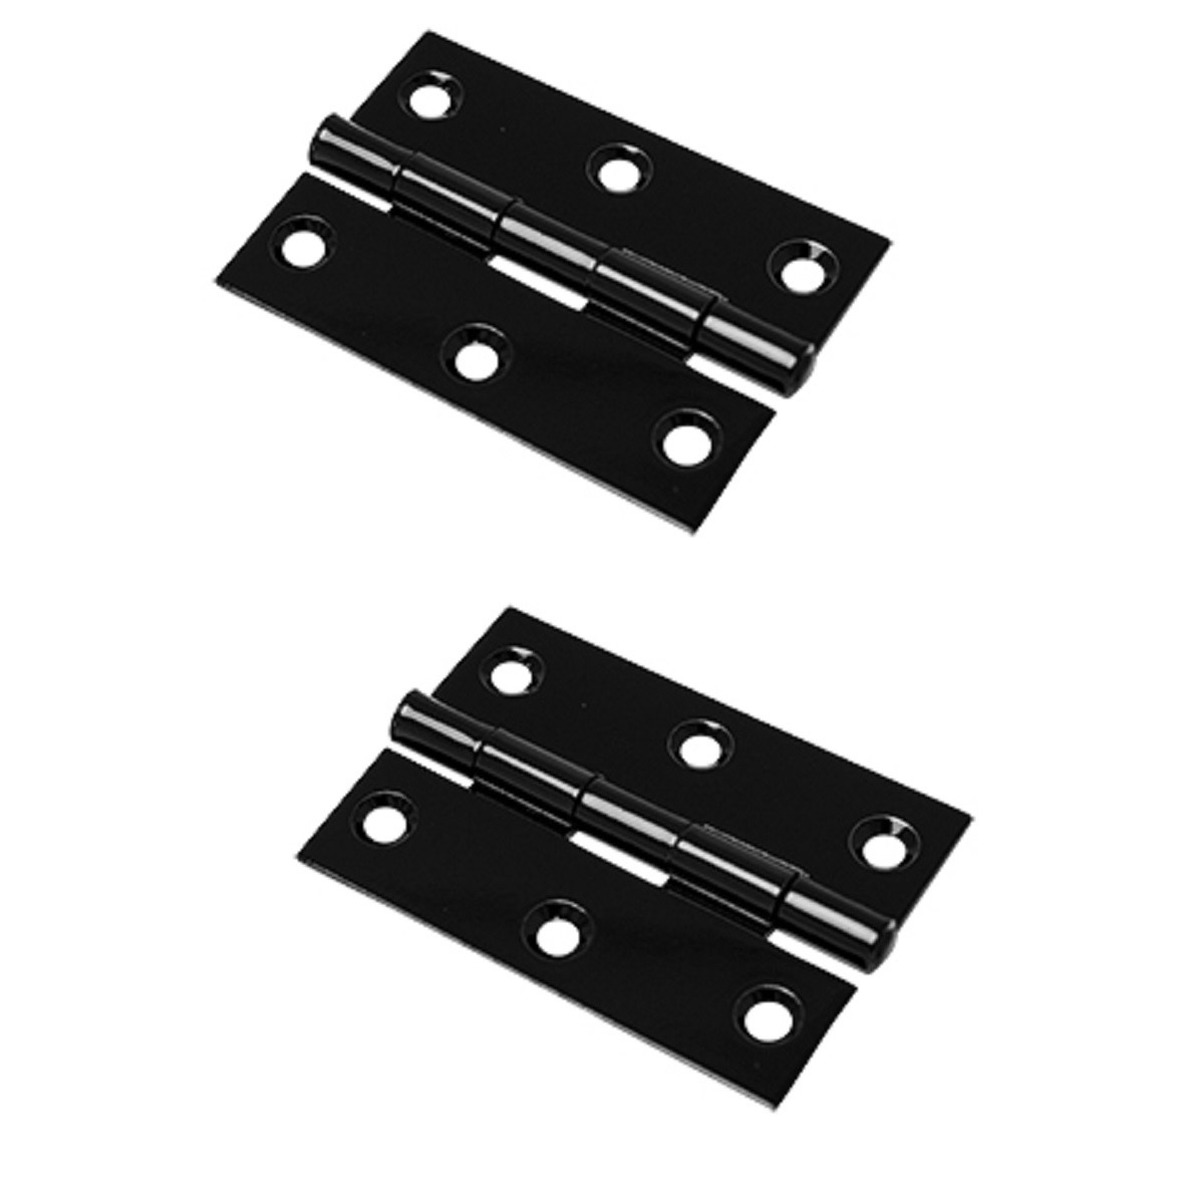 2x stuks scharnier-bouwscharnier-meubelscharnieren zwart ijzer met rechte hoeken 9 x 9 x 2 cm